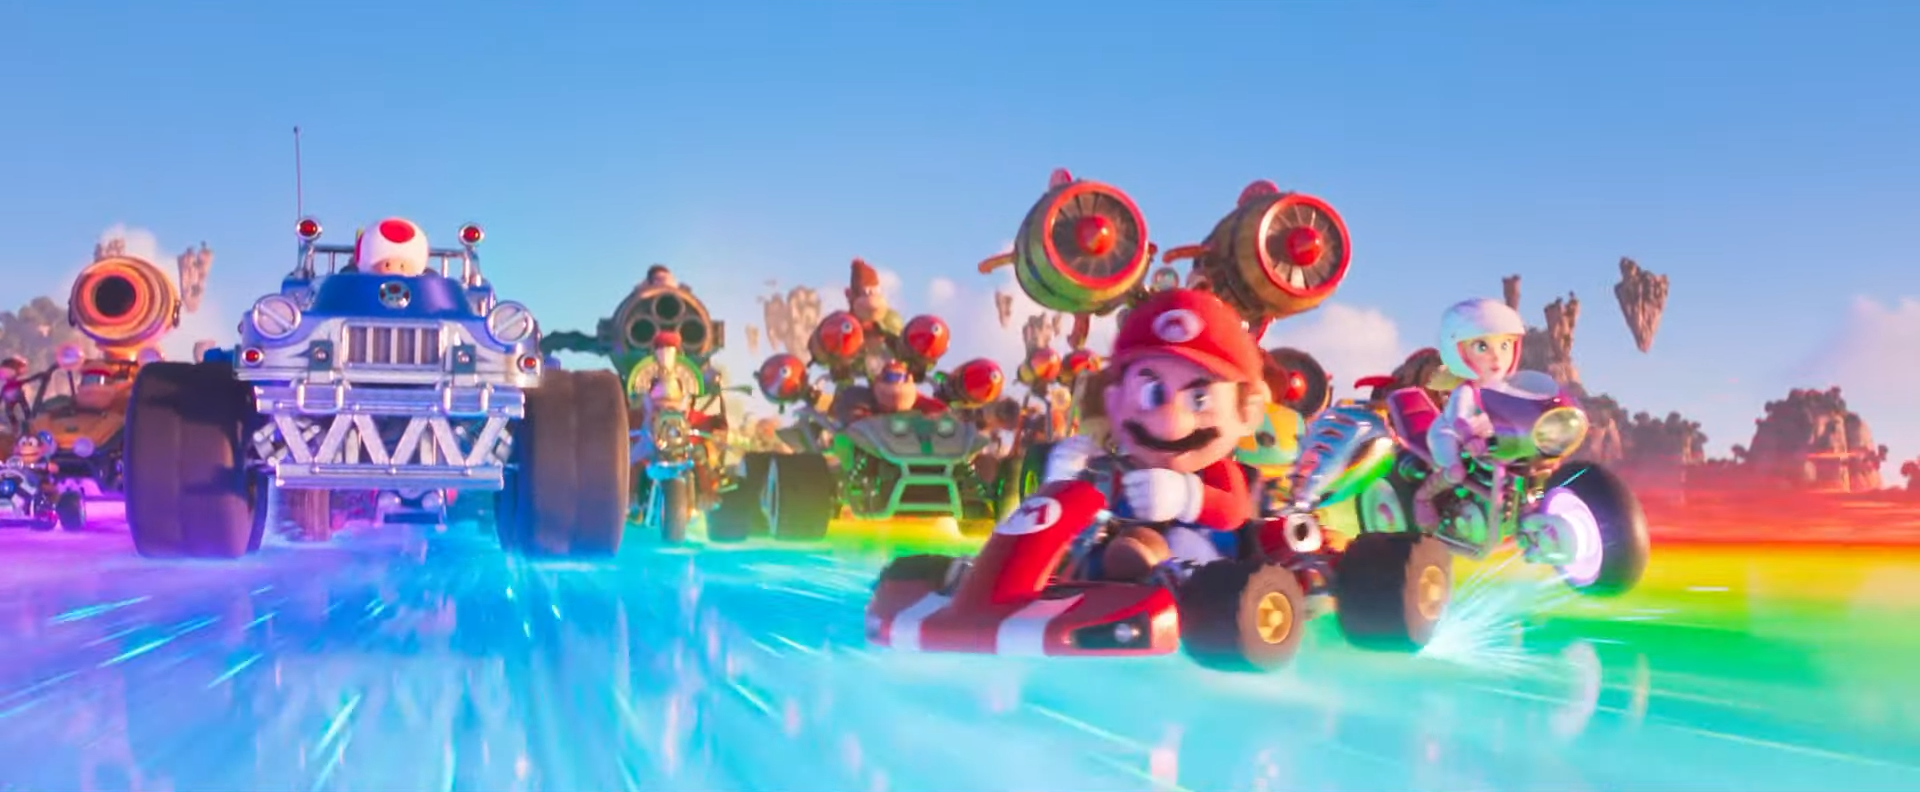 El nuevo tráiler de la película The Super Mario Bros. trae sorpresas ...